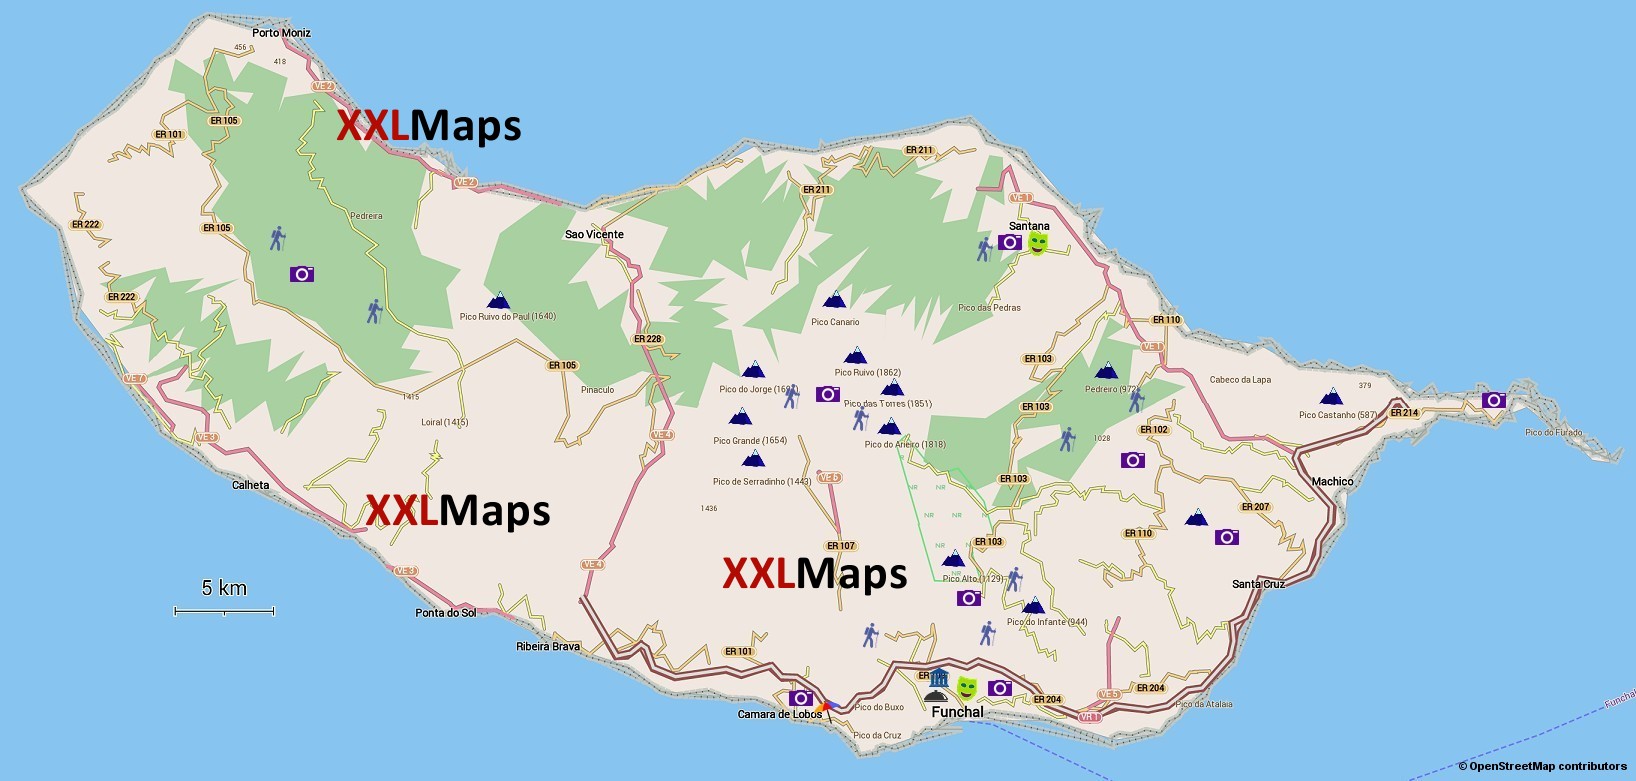 Fysisk kart over Madeira